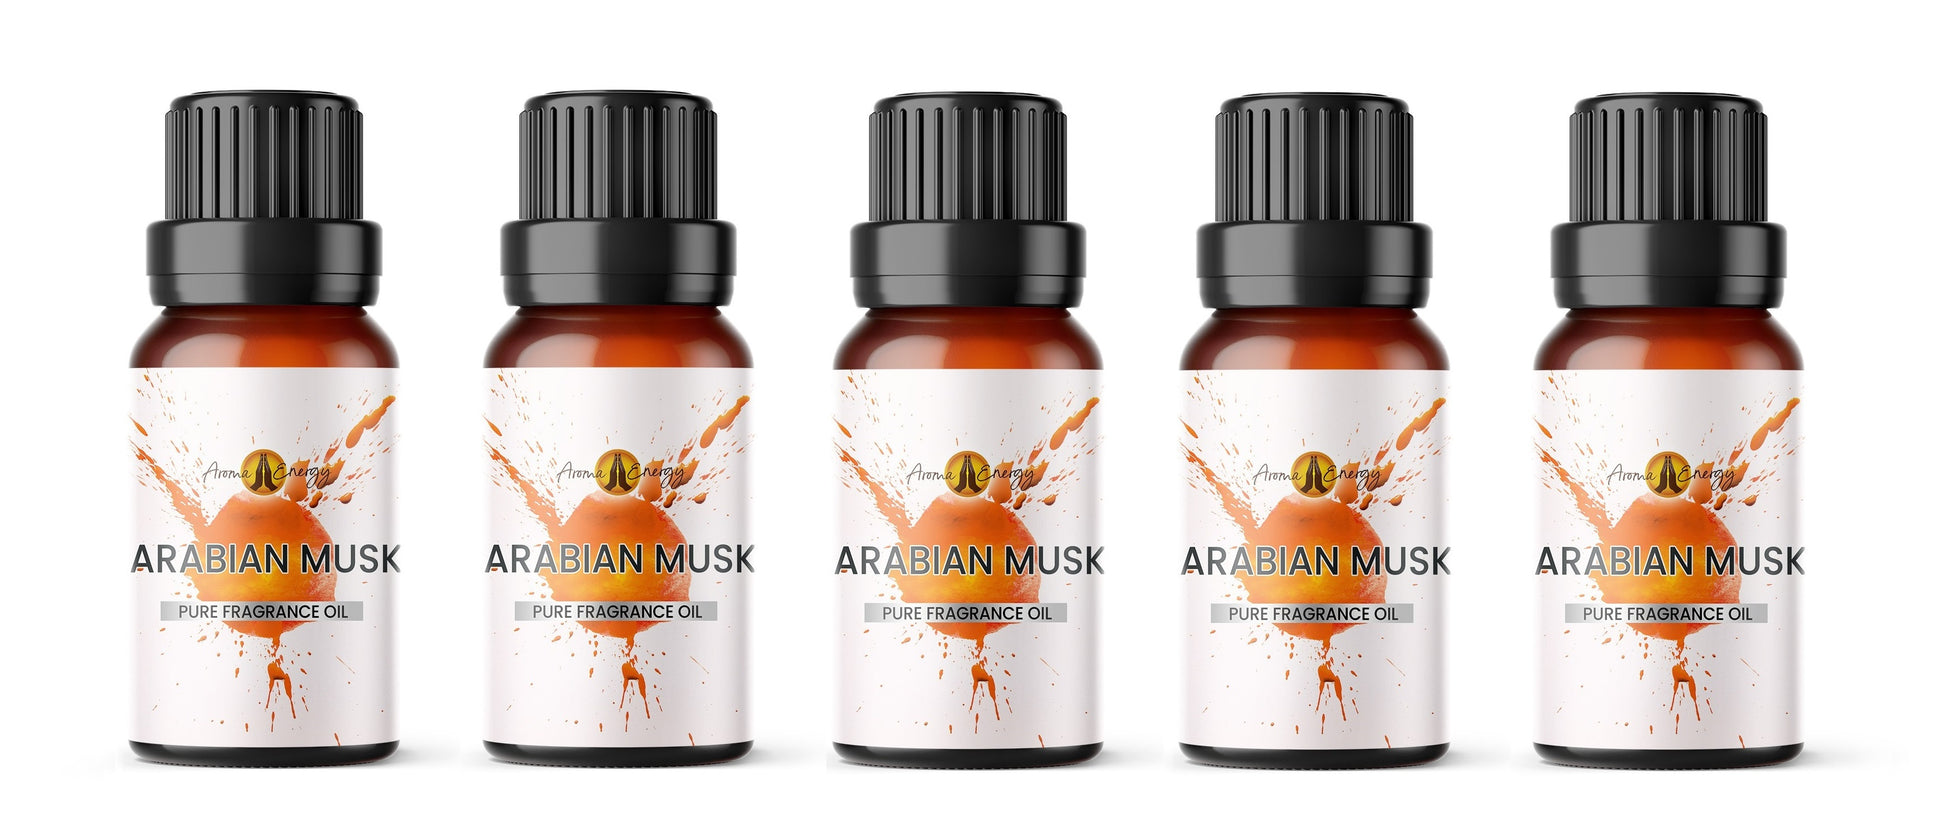 Arabian Musk Fragrance Oil - Aroma Energy